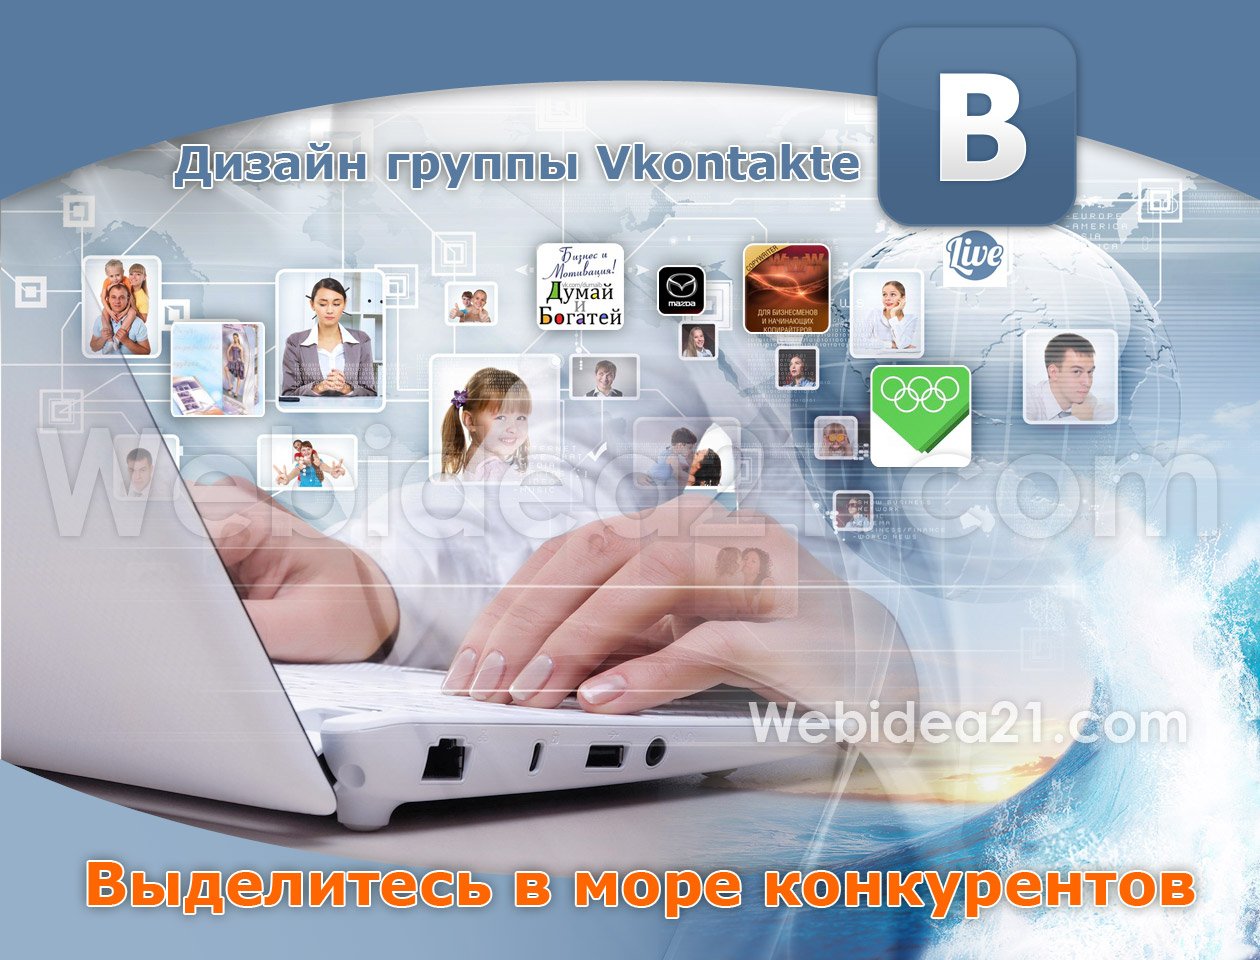 Выделитесь в море конкурентов - дизайн группы Vkontakte